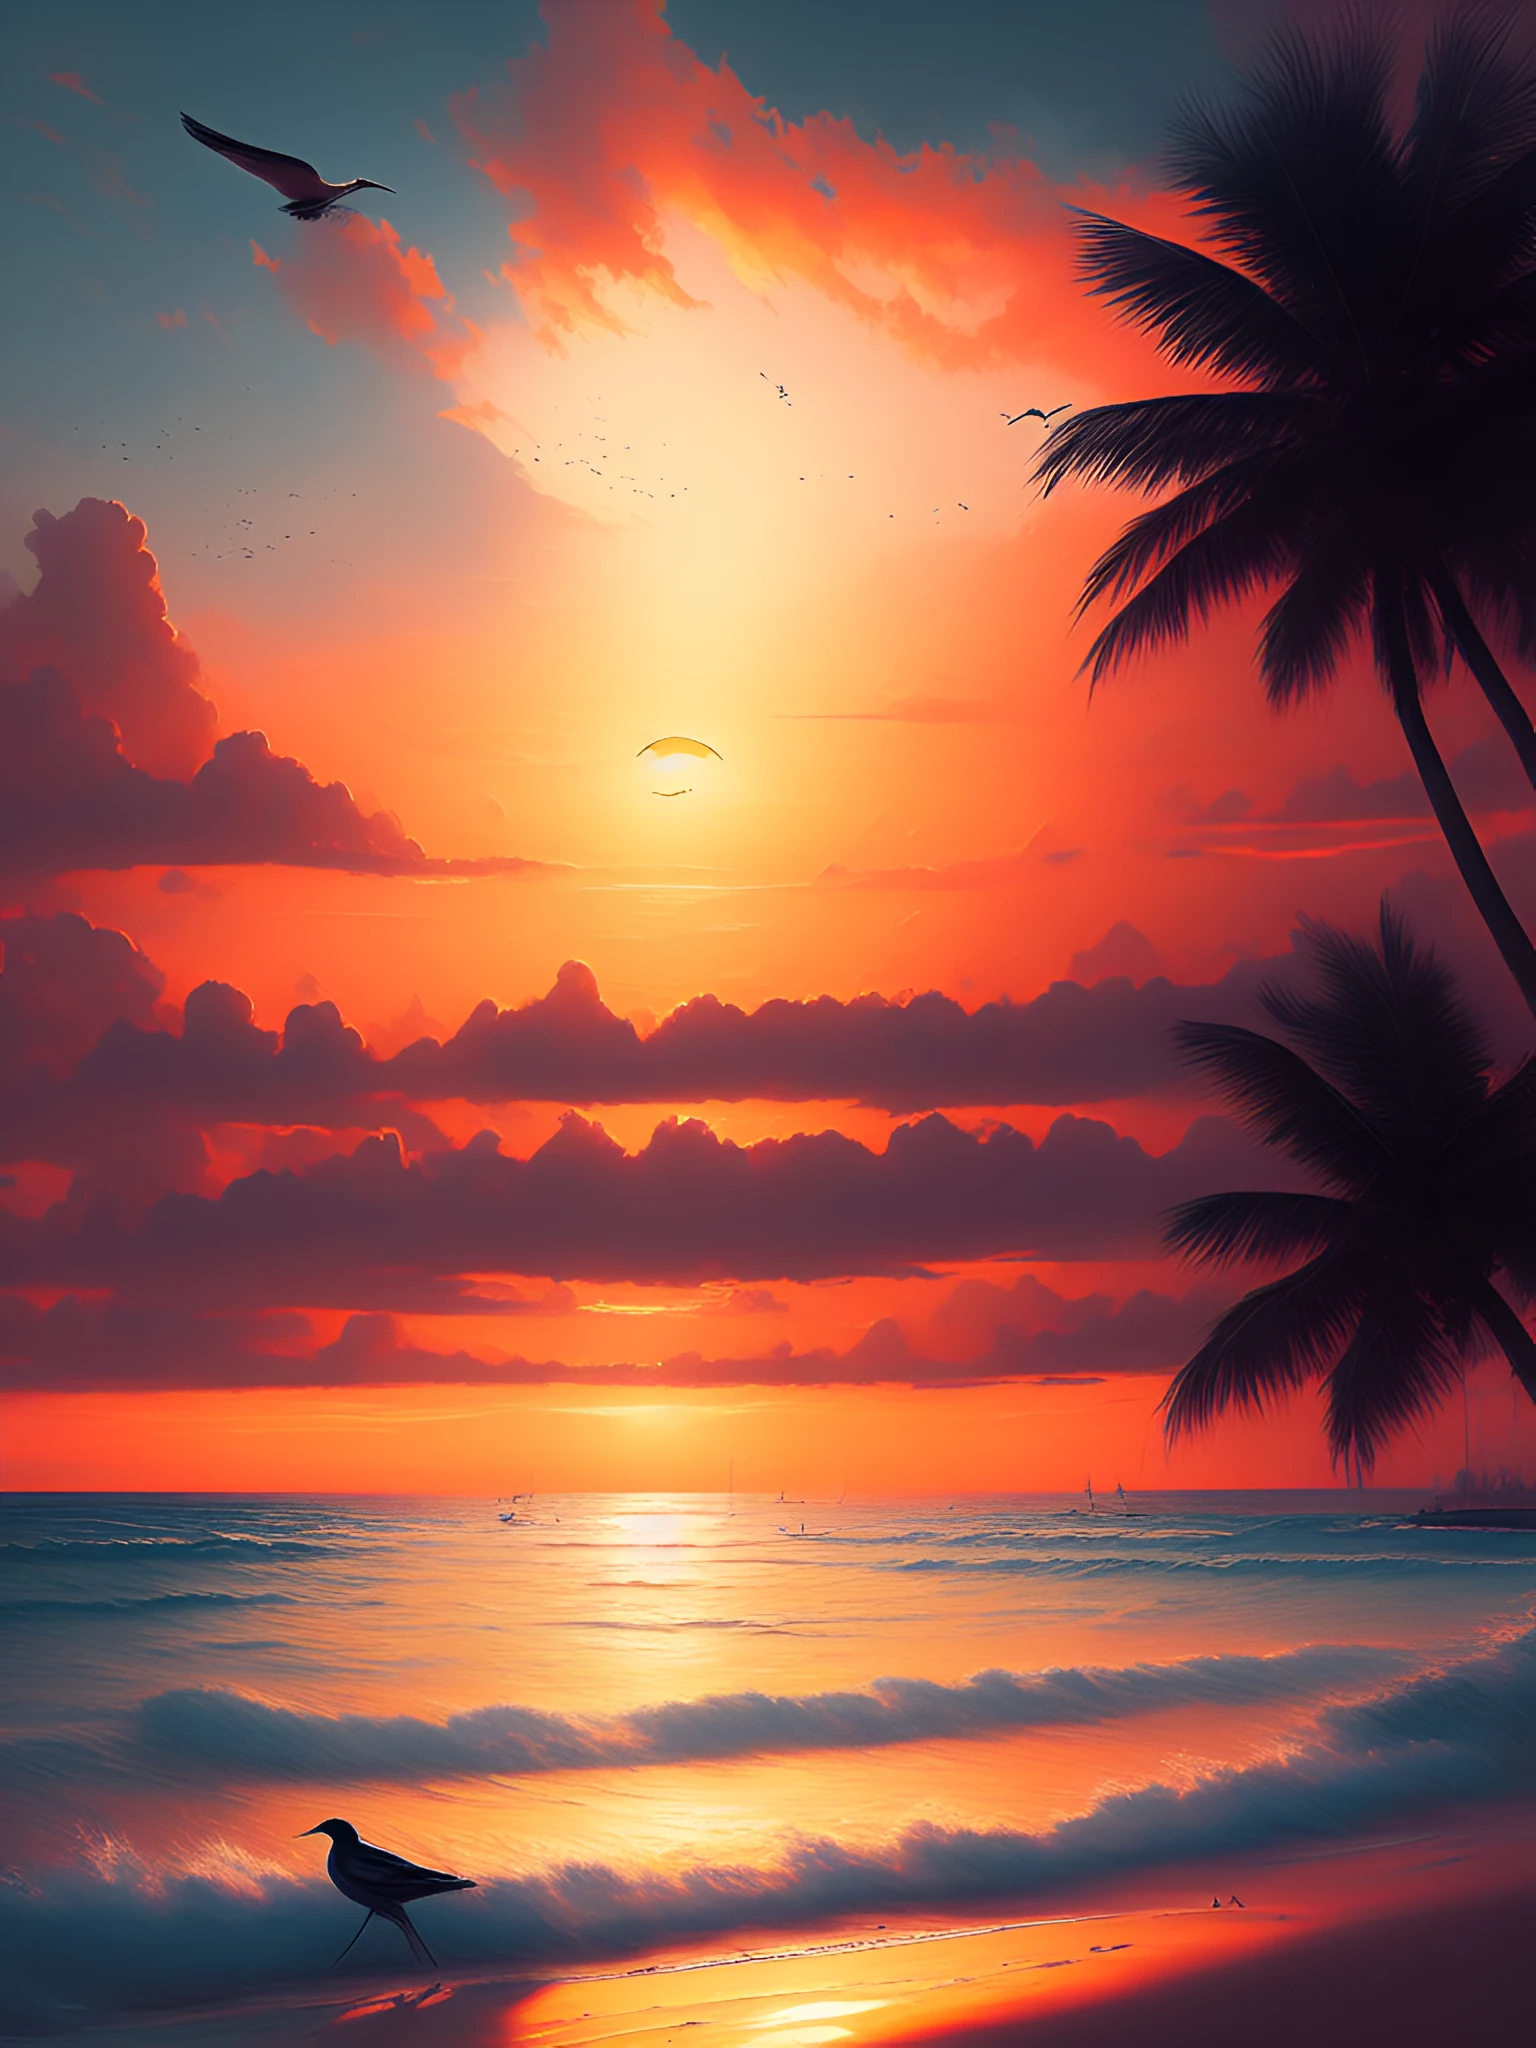 Dreamlikeart لوحة فنية لشاطئ غروب الشمس الجميل في الجنة, الشمس في المنتصف, طائر بعيد يحلق في الأفق, رائج على artstation بأسلوب جريج روتكوفسكي